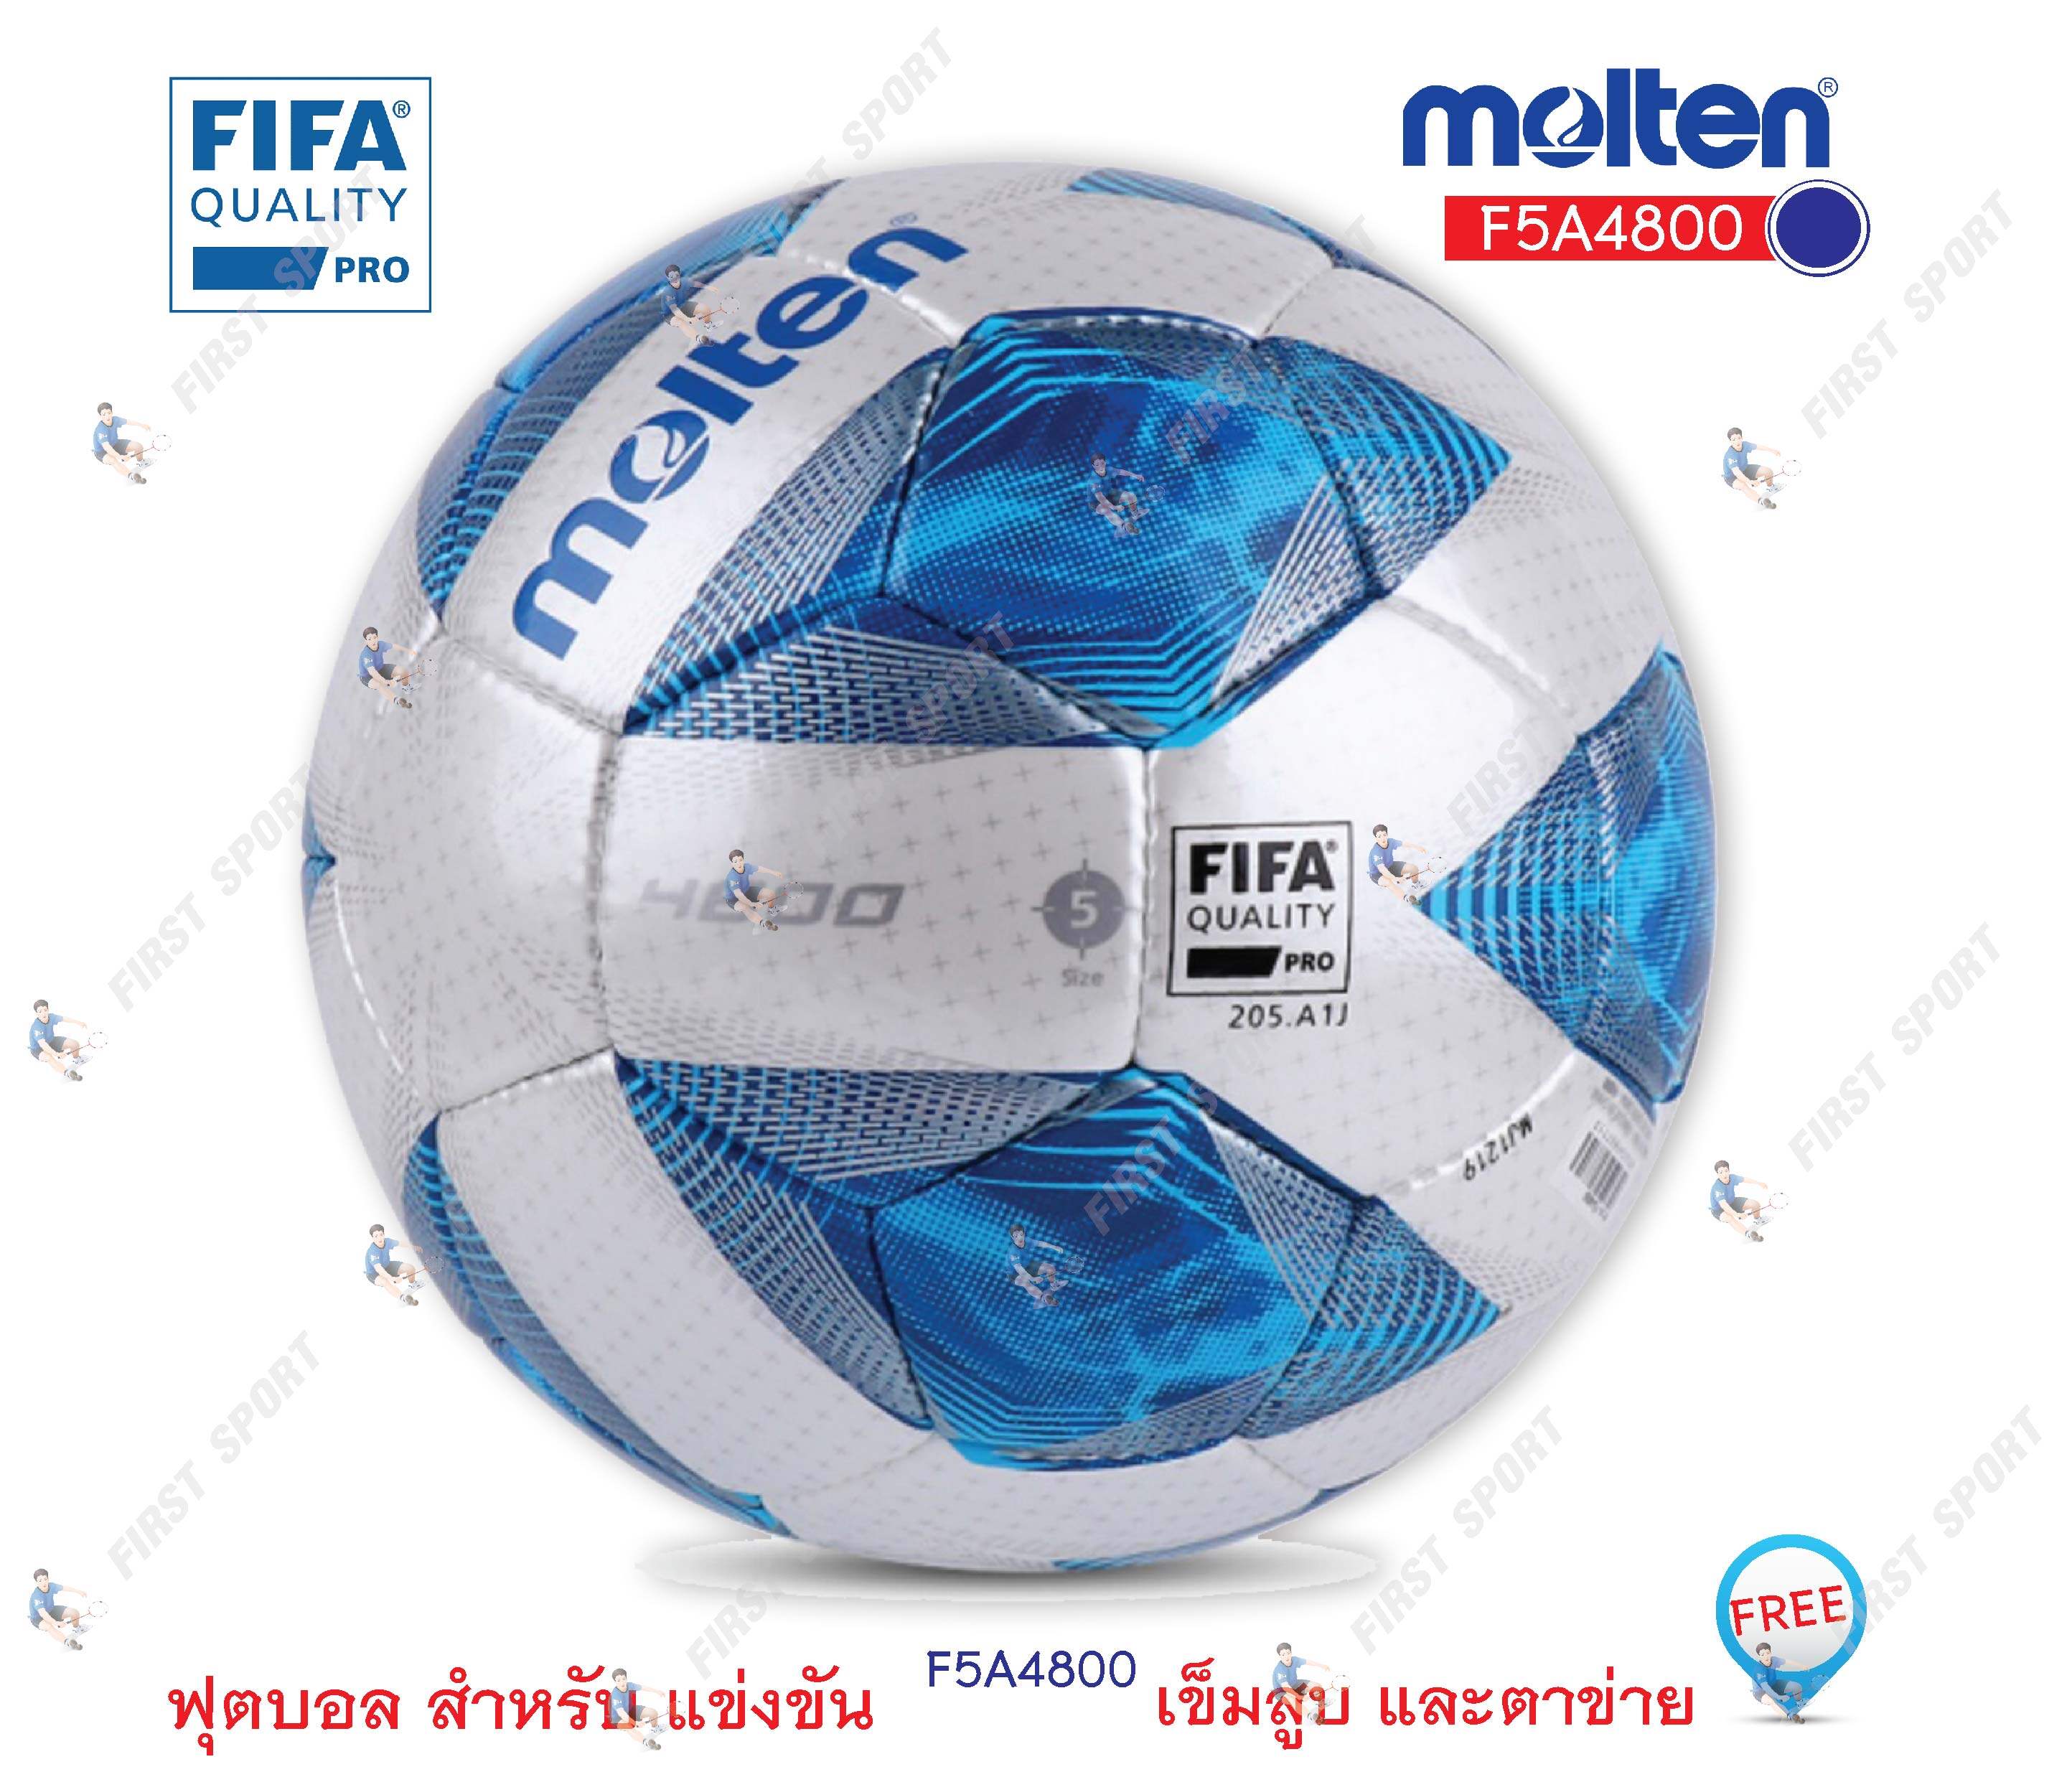 ลูกฟุตบอล ฟุตบอล แข่งขัน molten รุ่น F5A4800 FiFa Quality